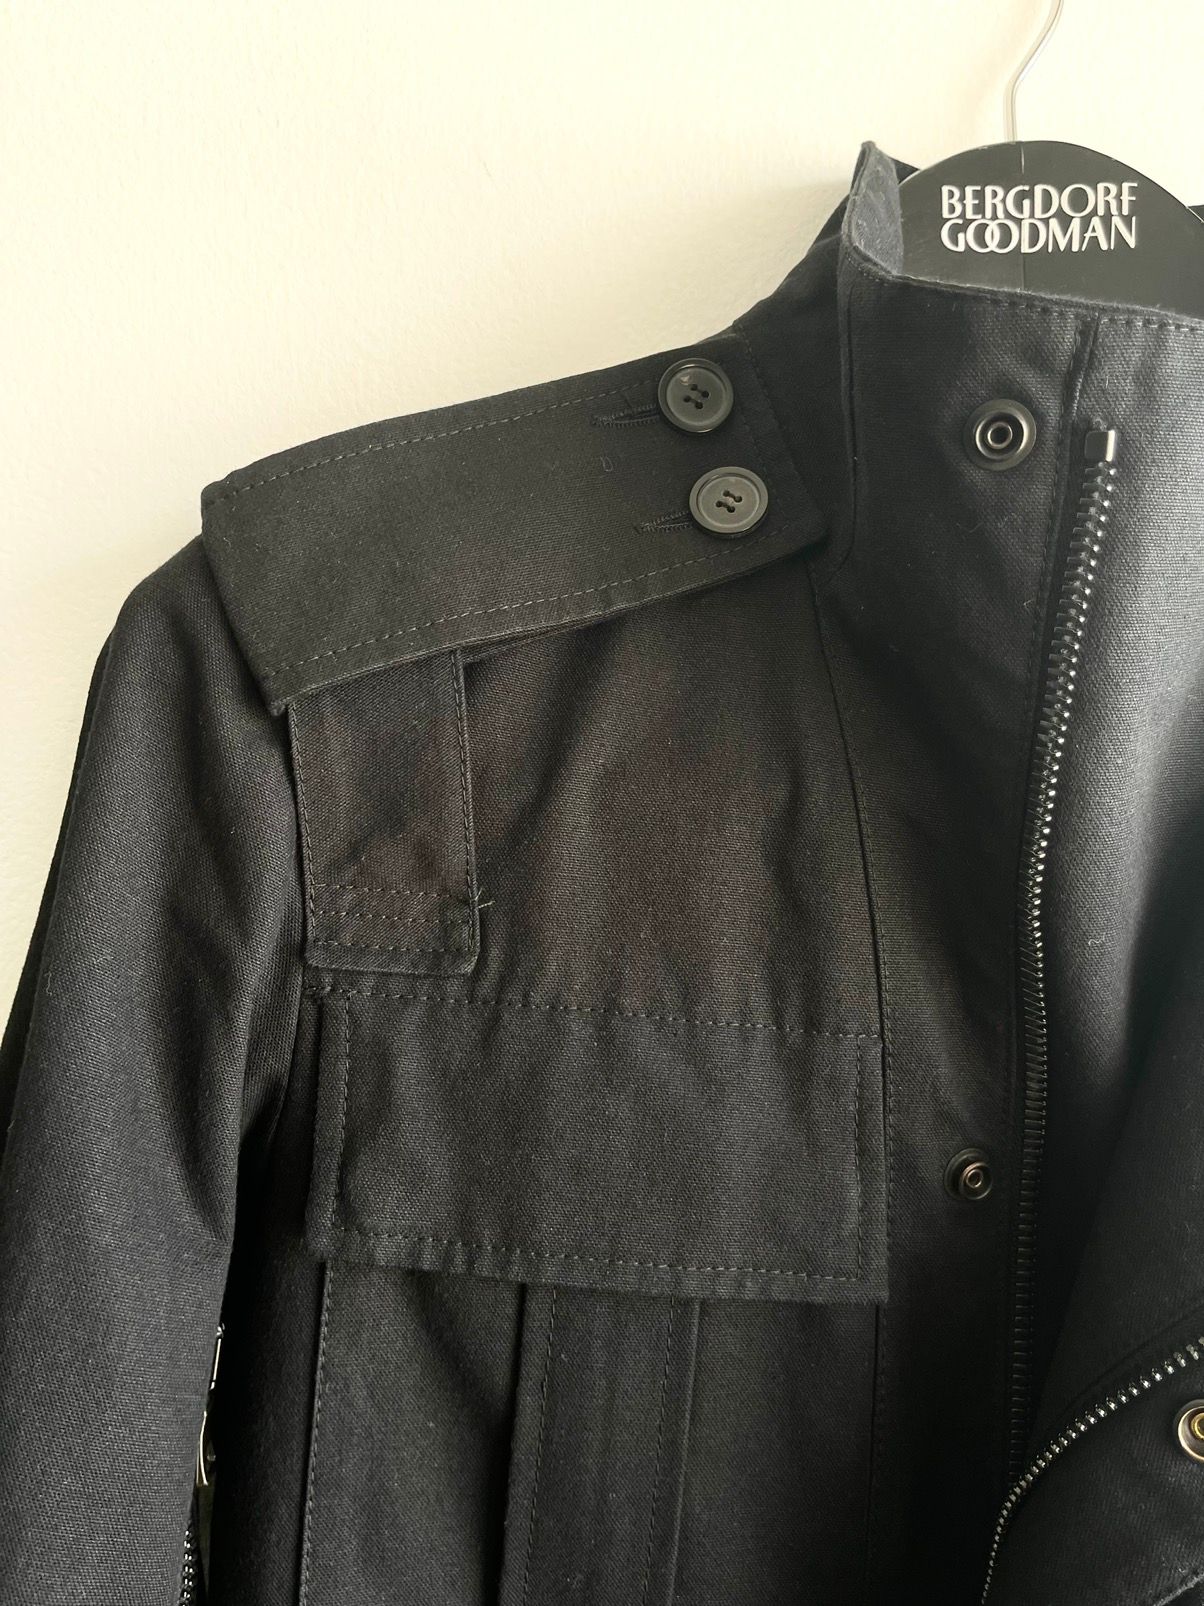 Balmain SS11 Decarnin Military Trench Coat Peacoat Jacket